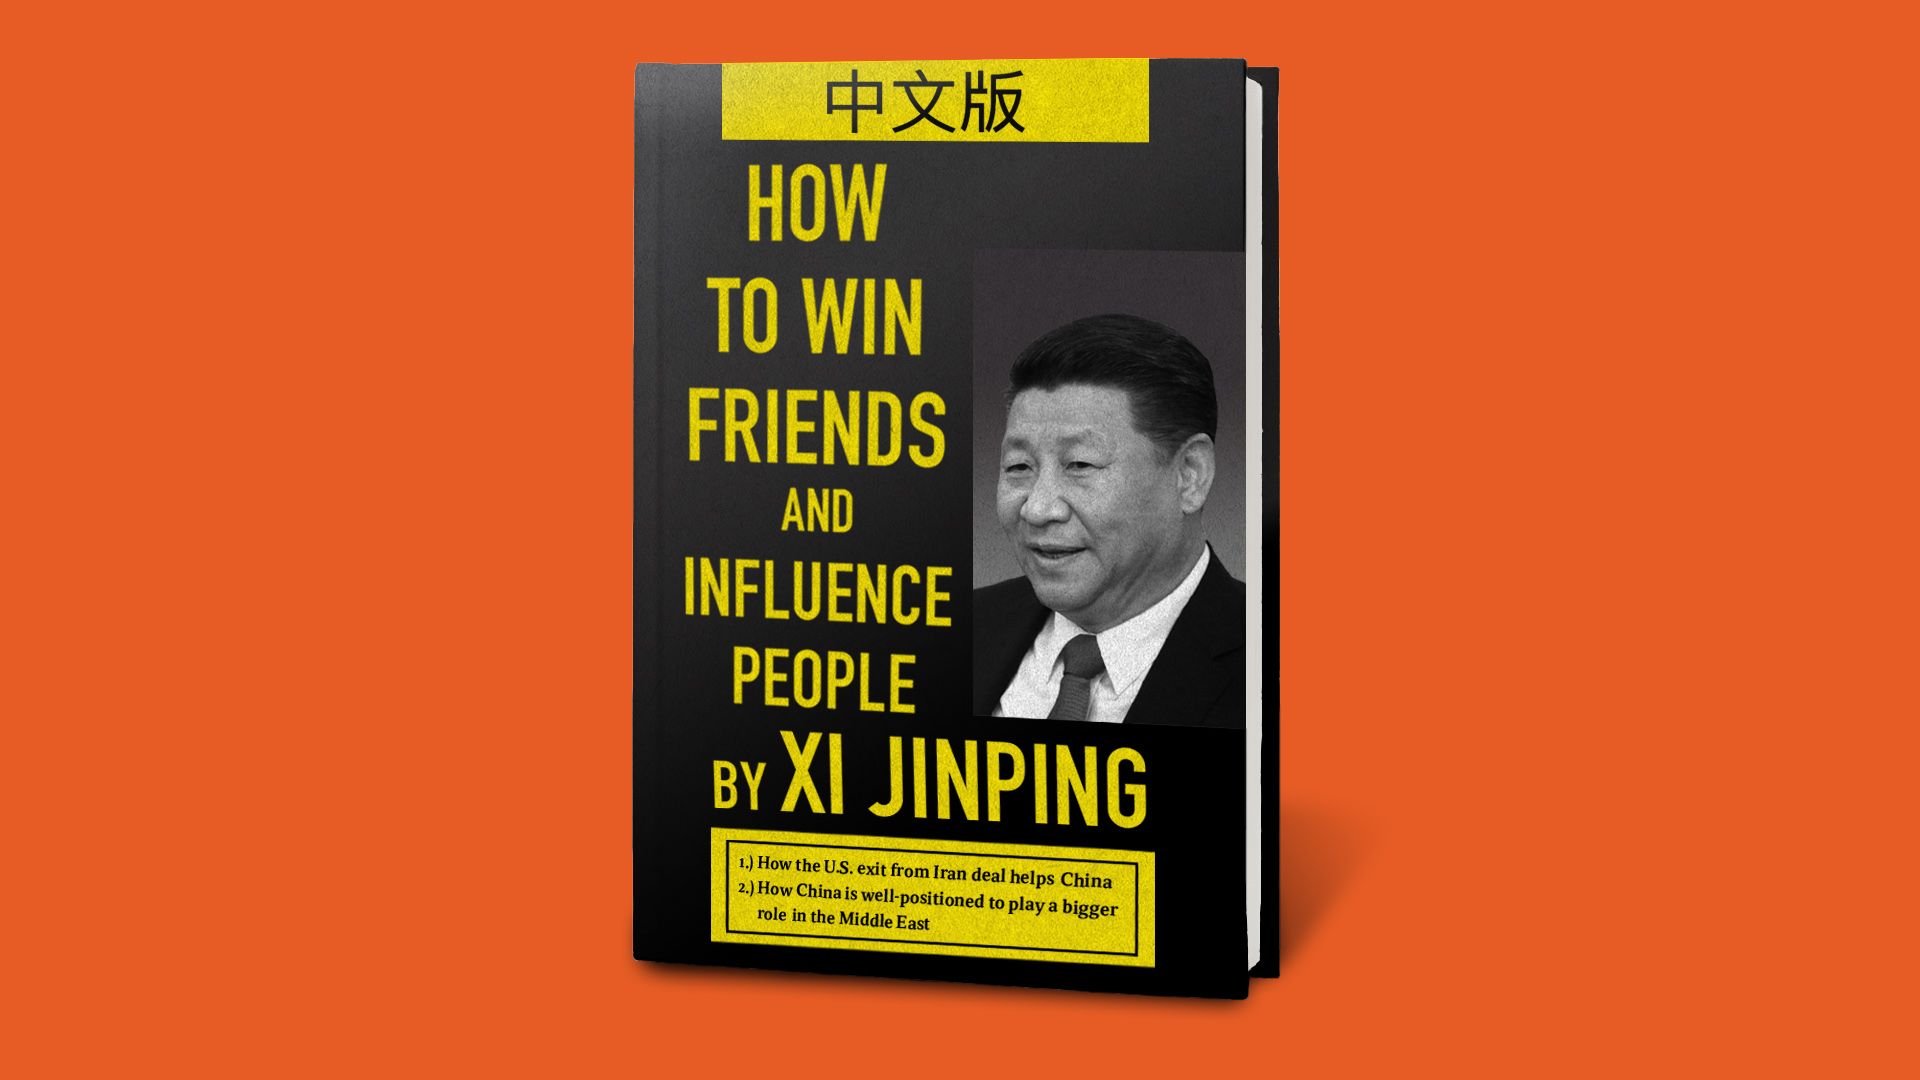 A book cover showing Xi Jinping